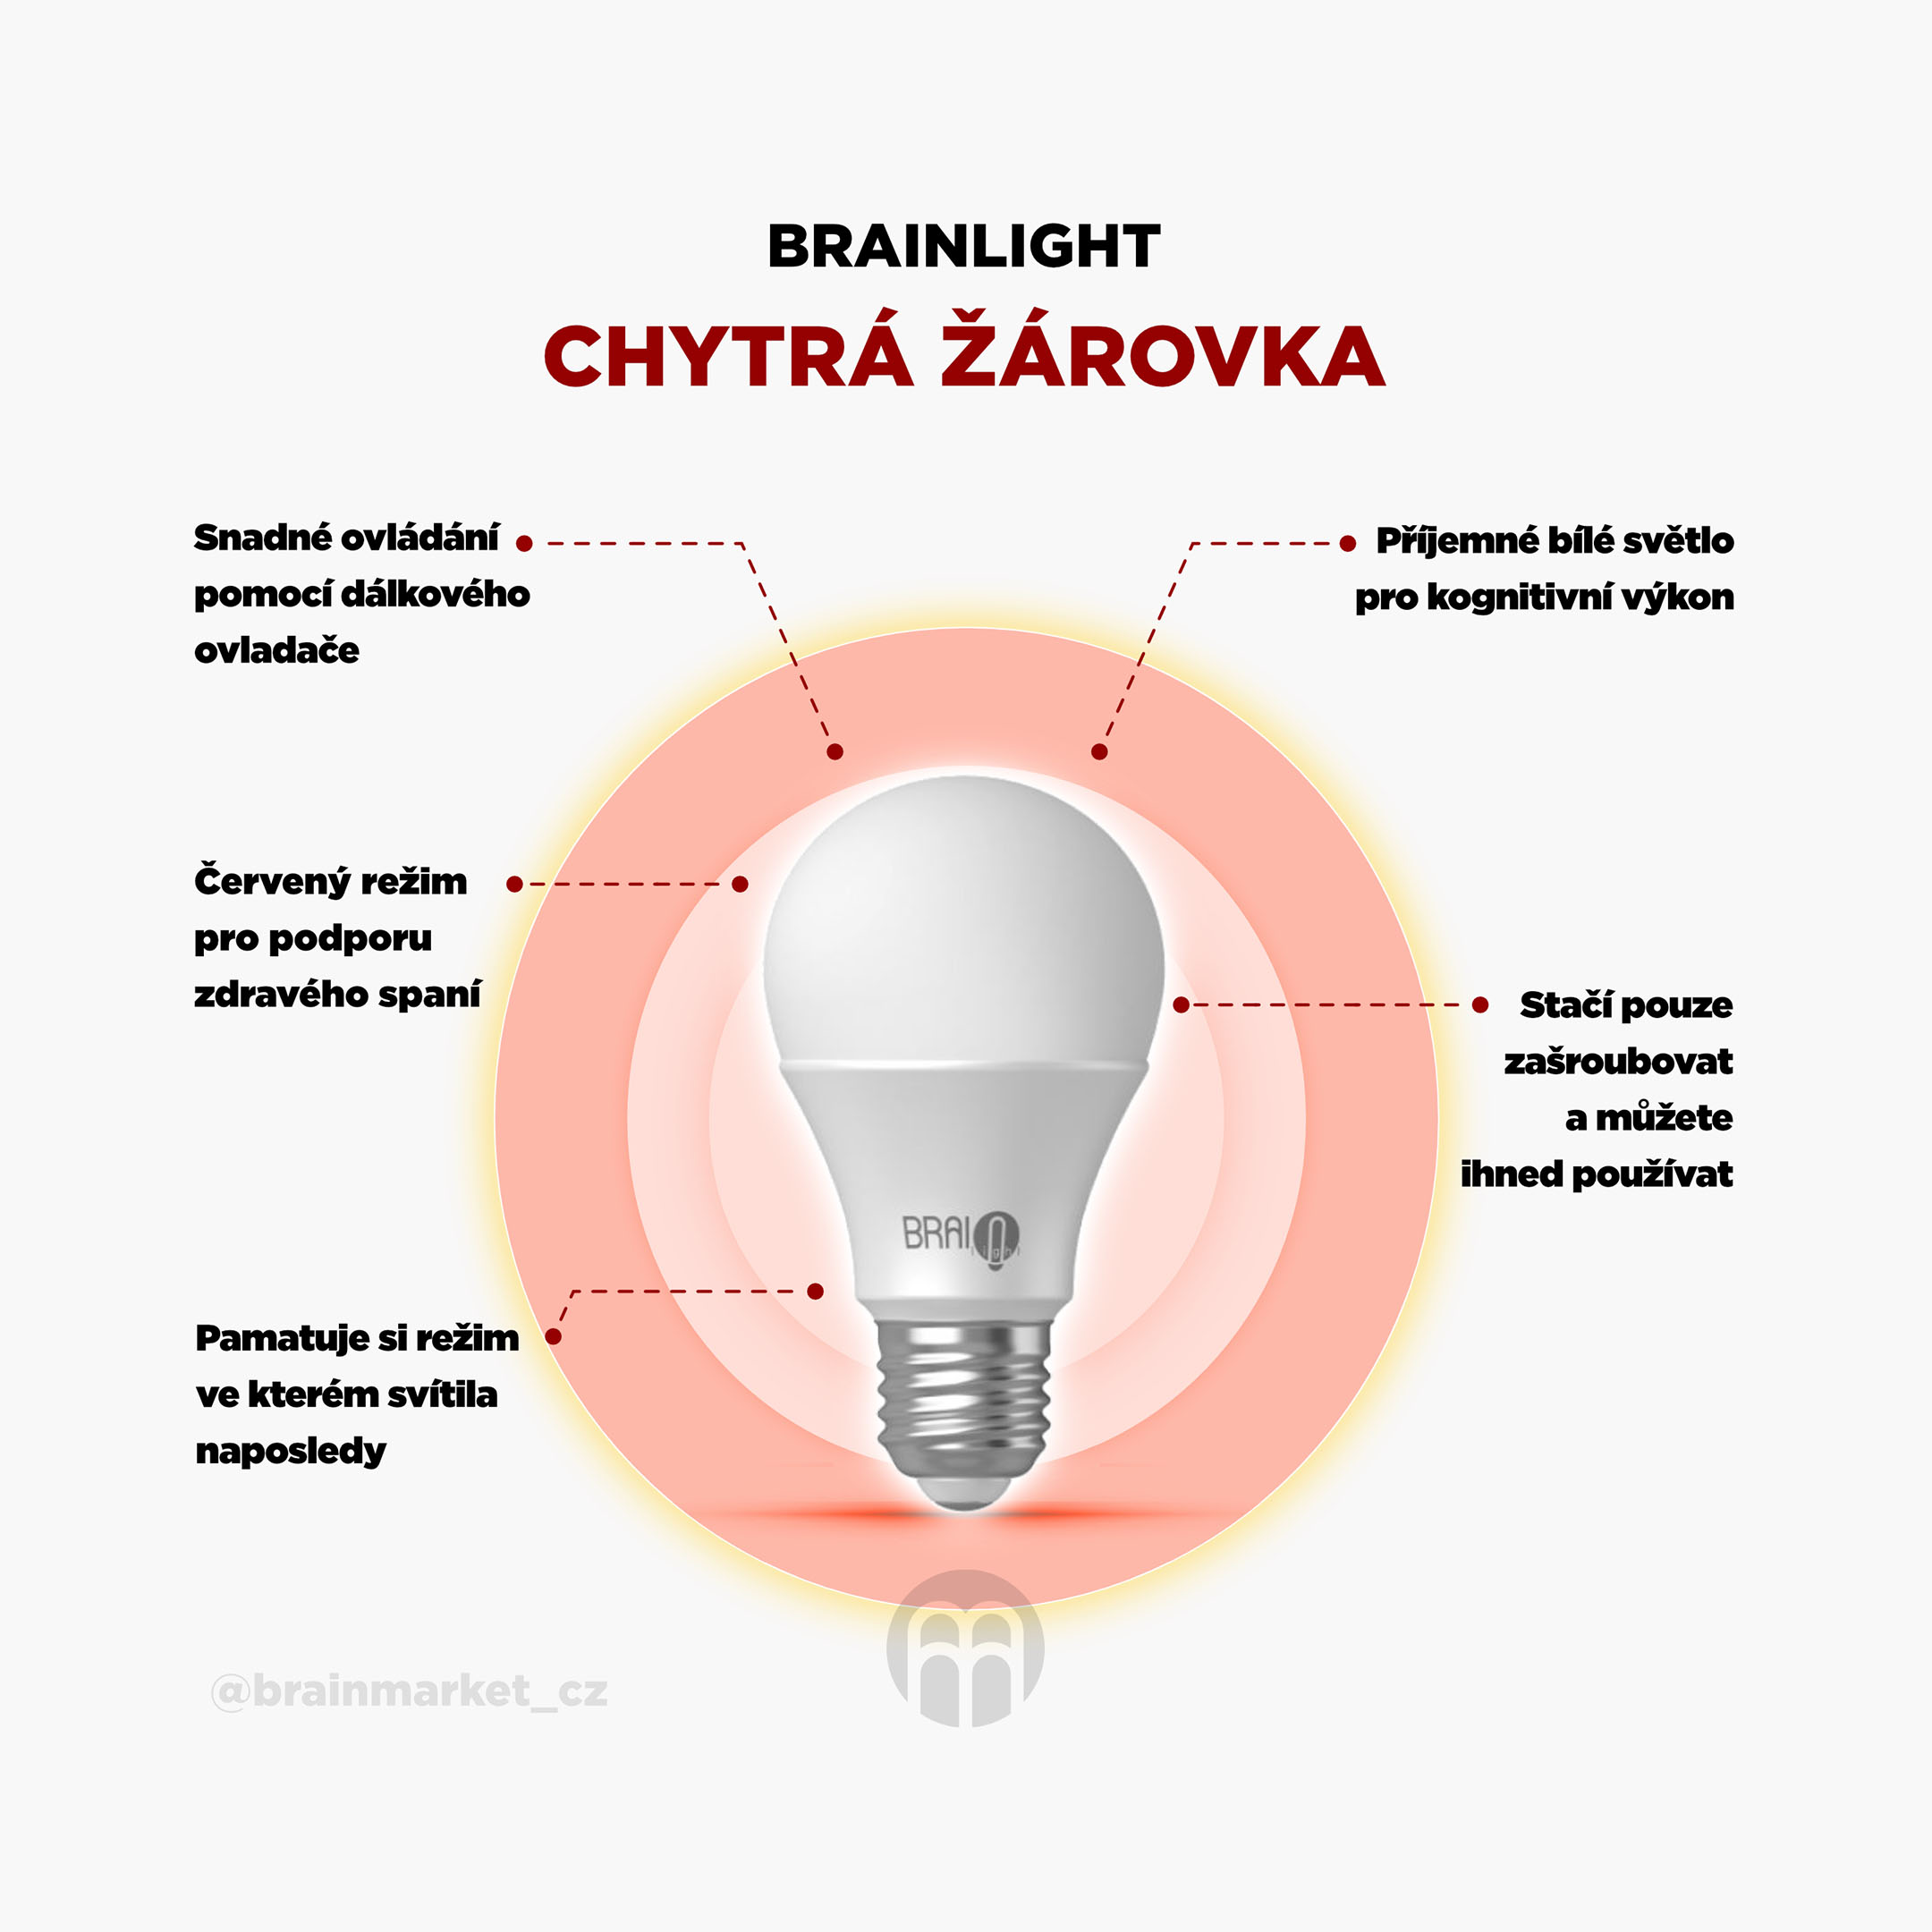 BrainLIGHT chytrá žárovka_infografika_2_cz